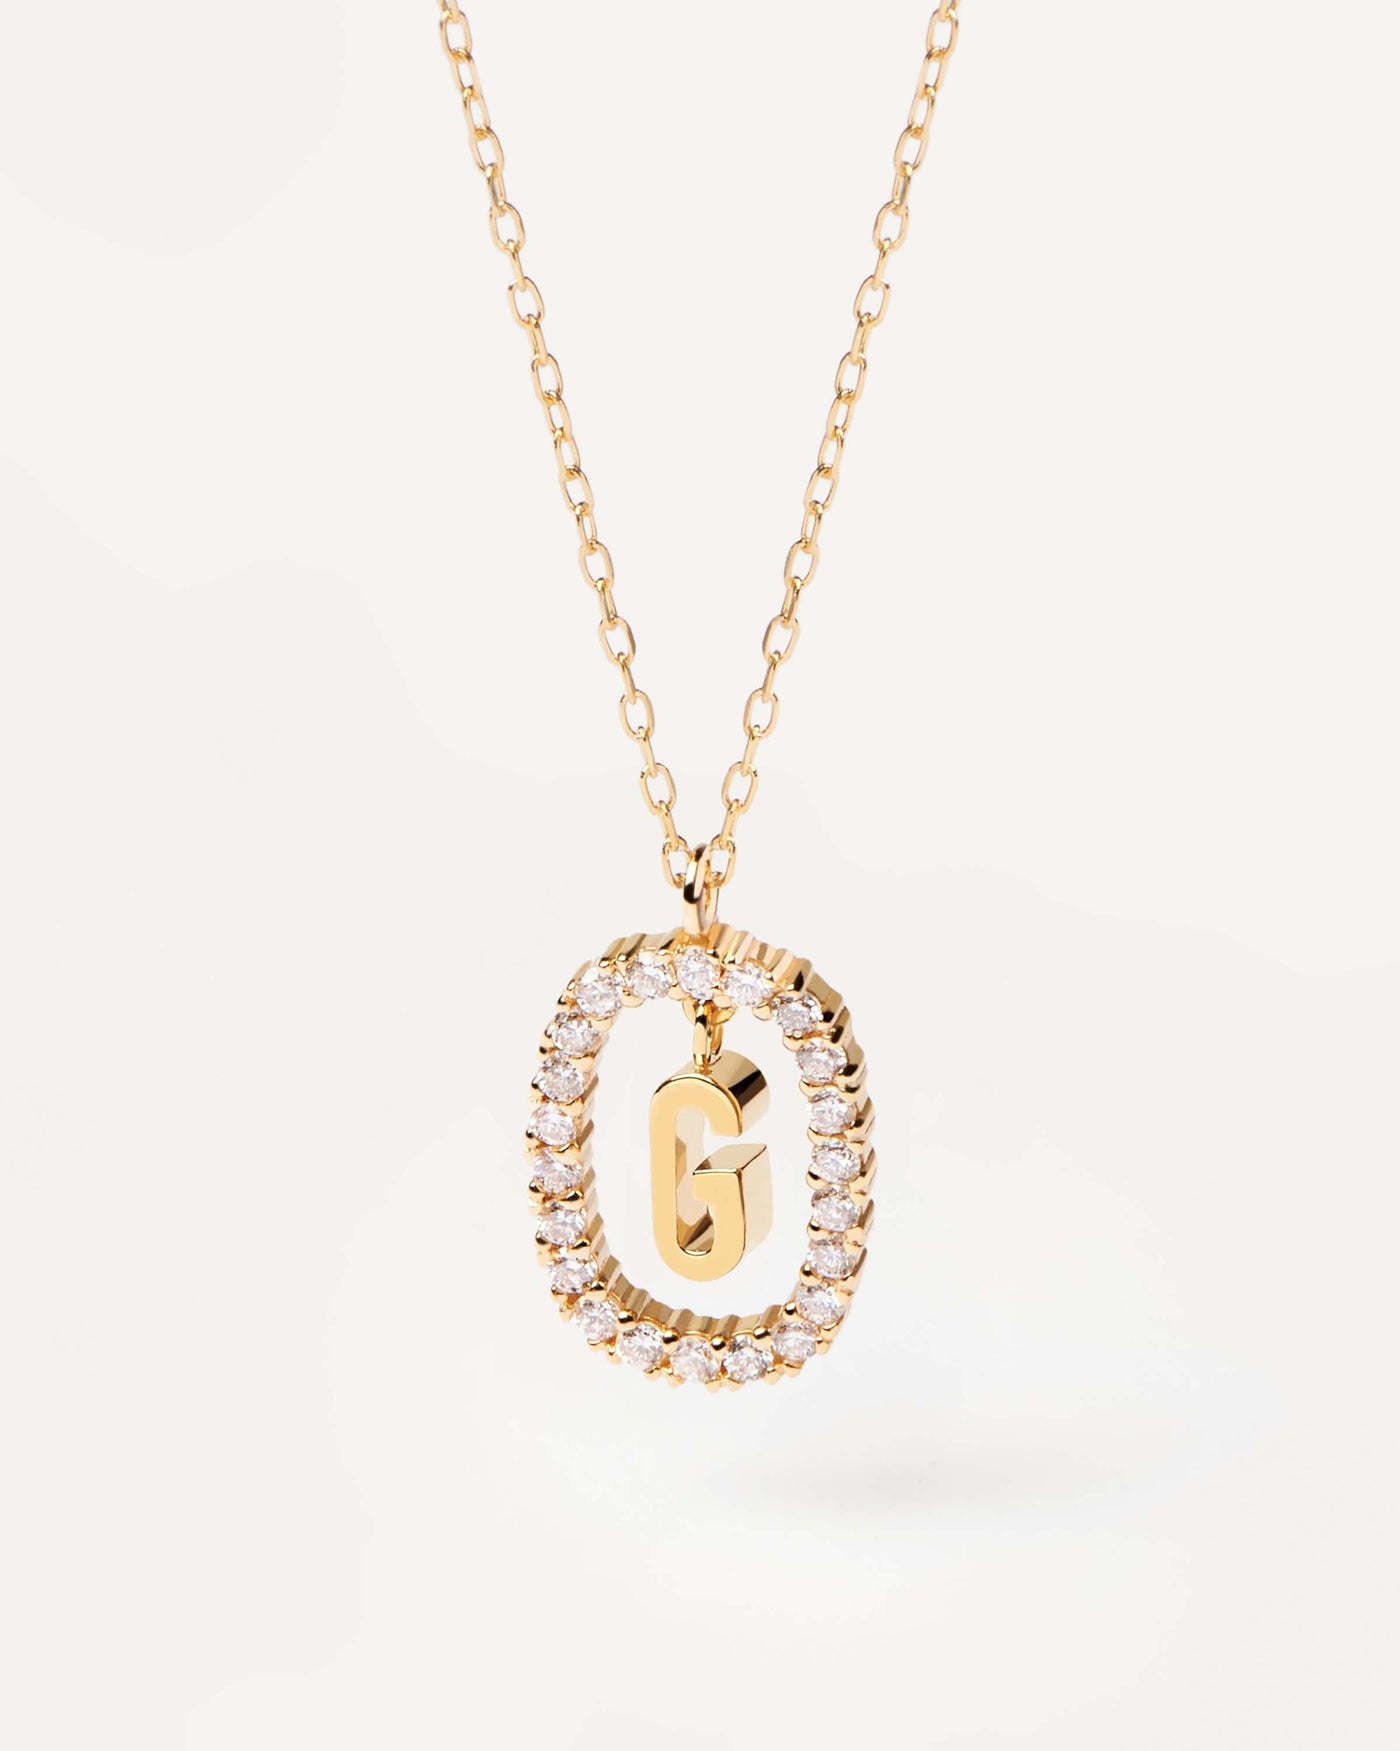 GoldHalskette mit Diamanten Buchstabe G. Erstes G-Halskette in soliden Gelbgold, umkreist von 0,33 Karat-Labor-Diamanten. Erhalten Sie die neuesten Produkte von PDPAOLA. Geben Sie Ihre Bestellung sicher auf und erhalten Sie diesen Bestseller.